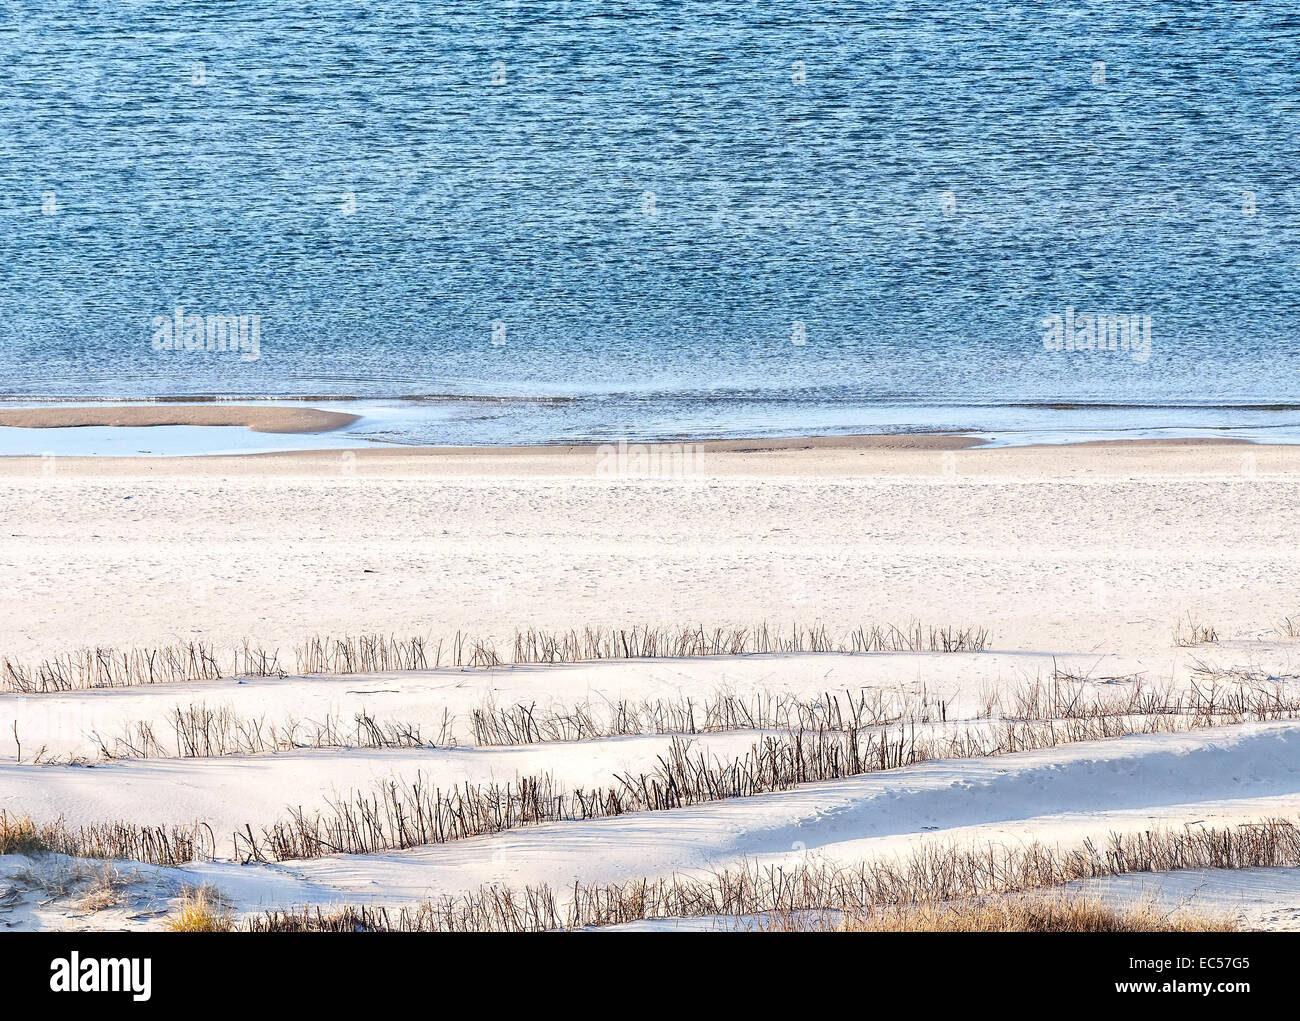 Beach sand dune nature background. Stock Photo